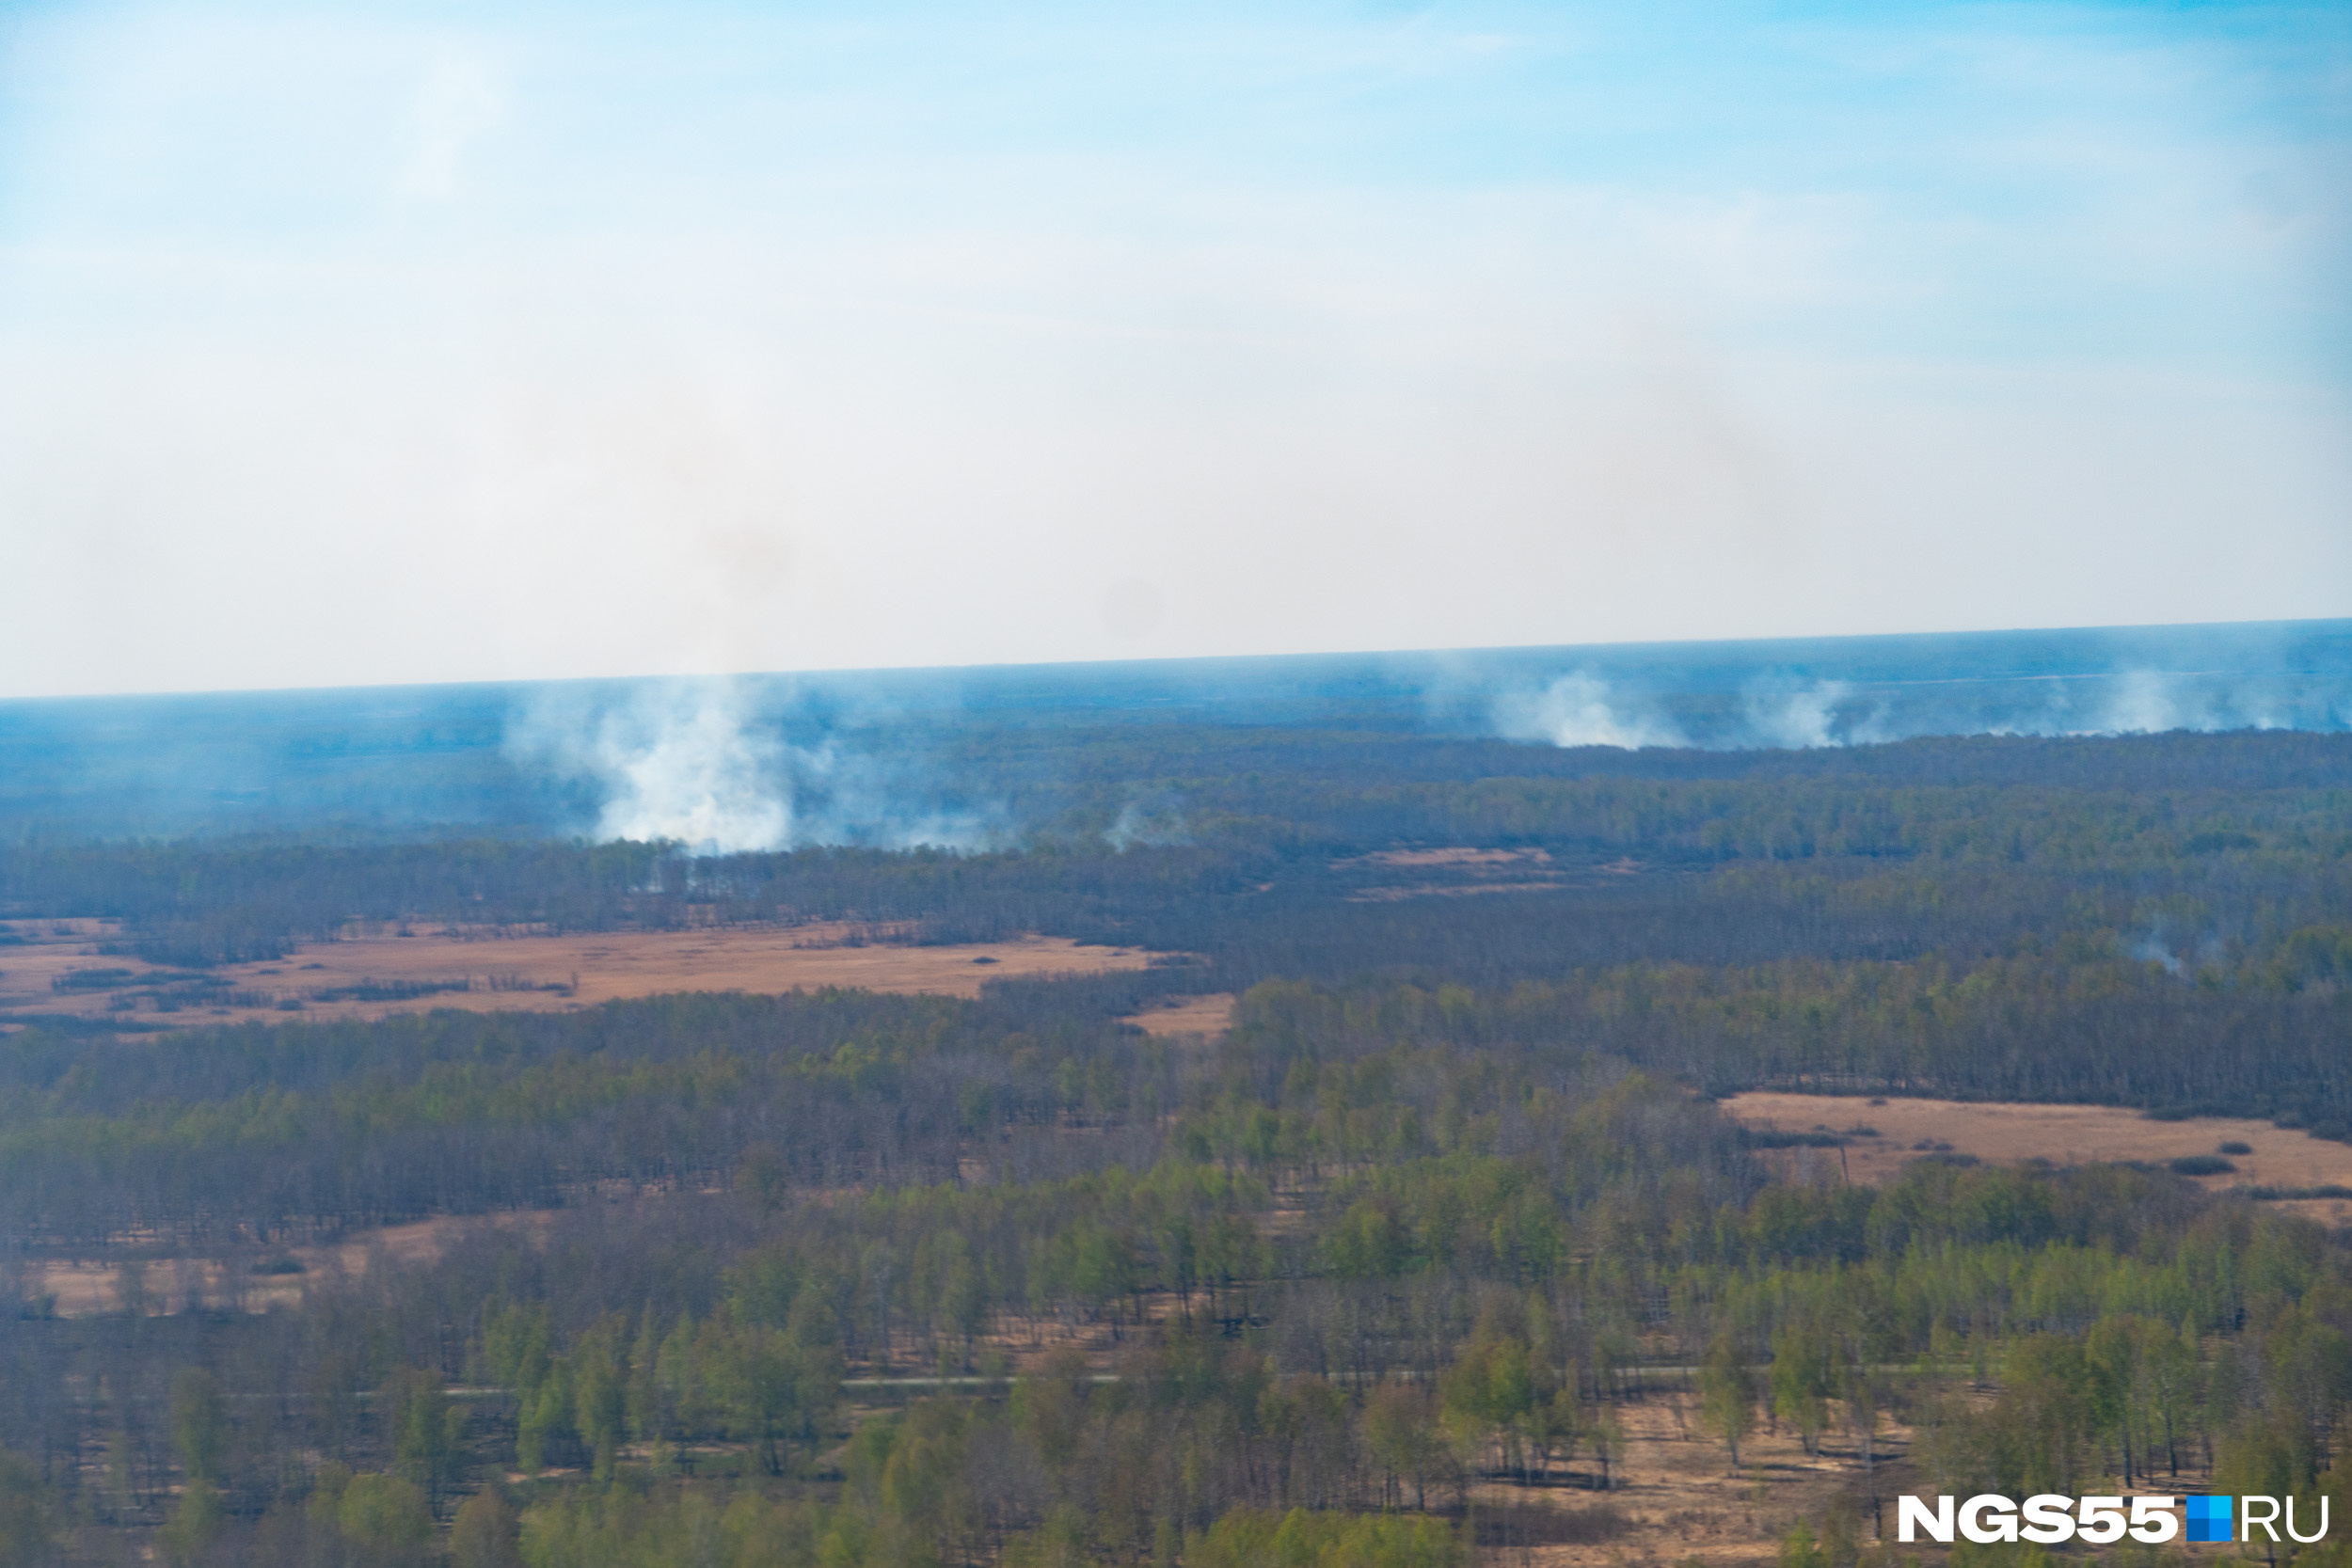 Где-то вдалеке <a href="https://ngs55.ru/text/incidents/2021/05/08/69904637/" target="_blank" class="_">бушуют лесные пожары</a>, с которыми в регионе борются до сих пор